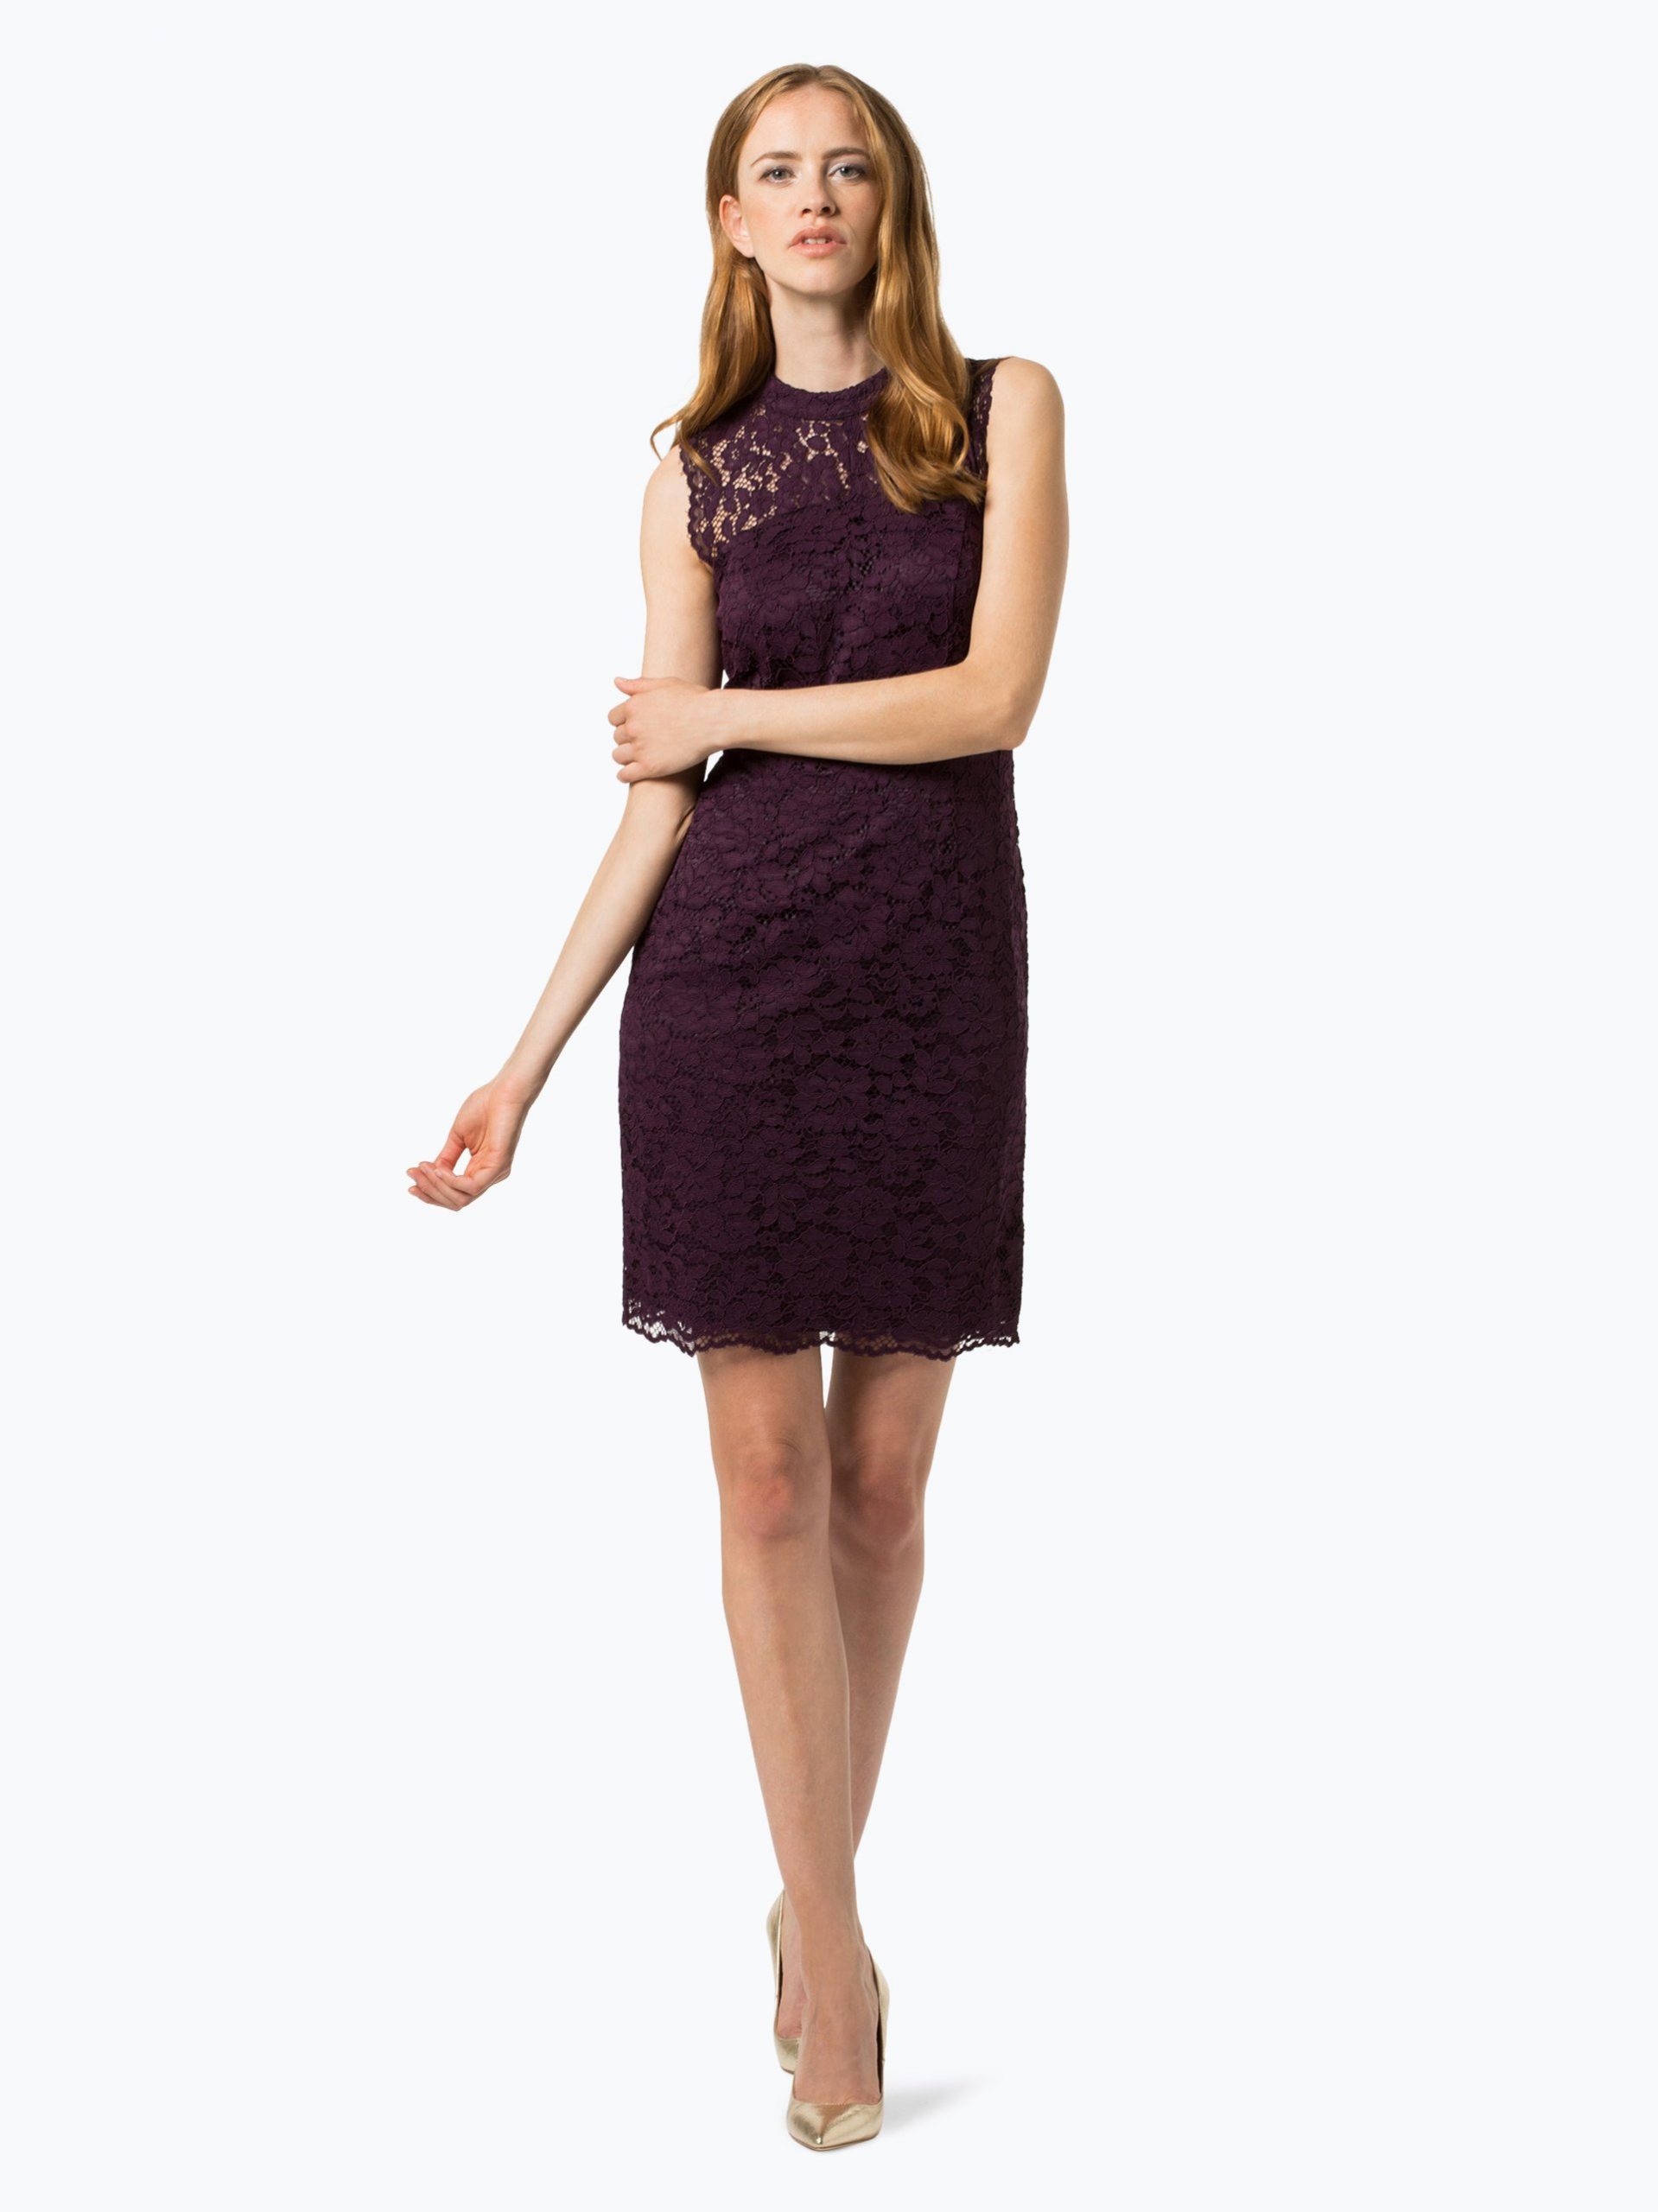 Esprit Collection Damen Kleid Online Kaufen  Peekund